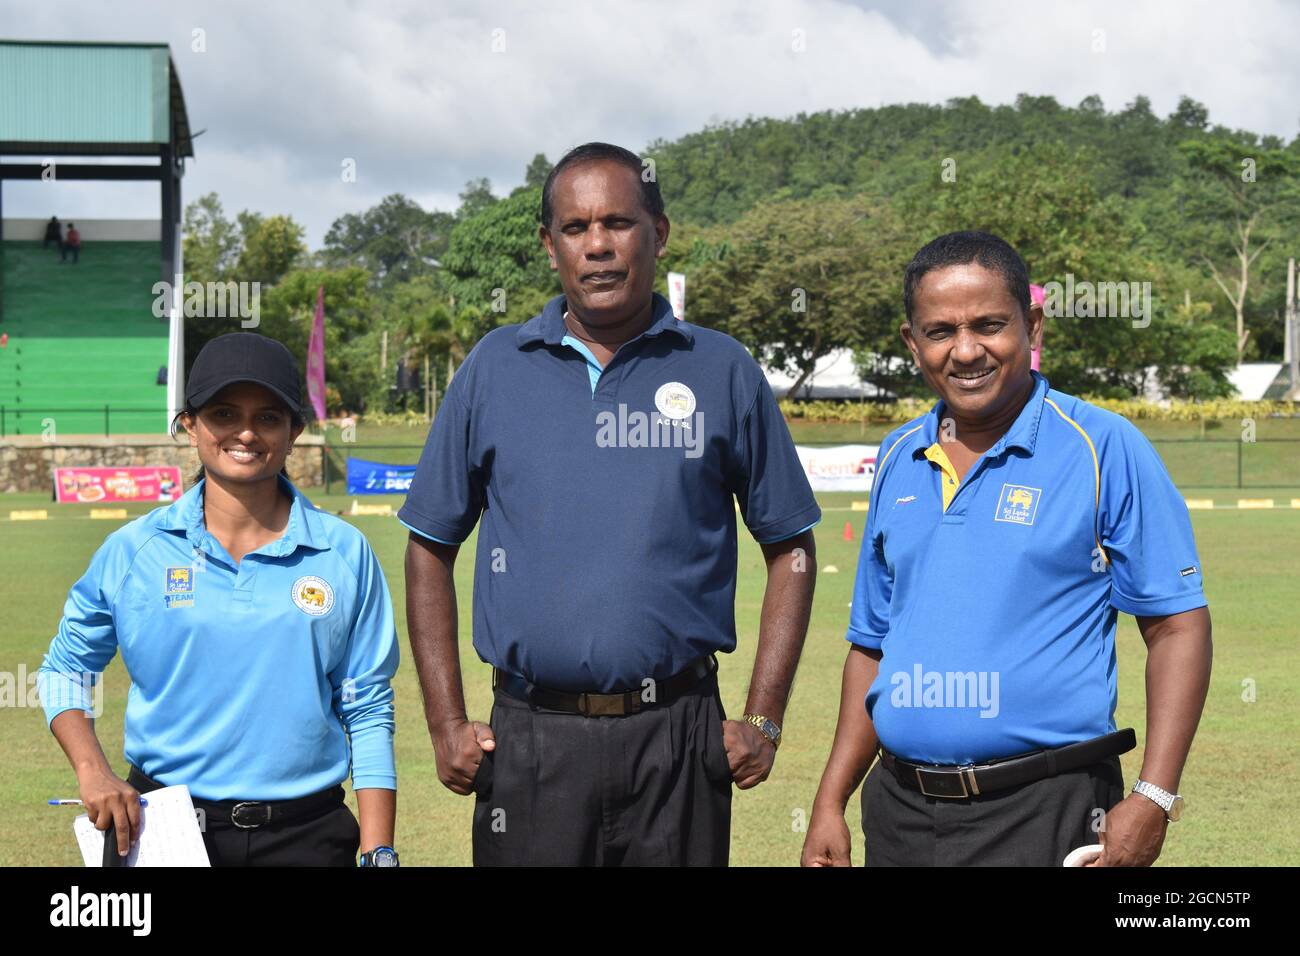 El críquet de Sri Lanka con árbitros masculinos en un partido de cricket en el campo de cricket de la Ordenanza del Ejército, Dombagoda. Las mujeres que han estado involucradas con el críquet como jugadores están tomando el arbitraje y anotando para participar en el juego. Sri Lanka. Foto de stock